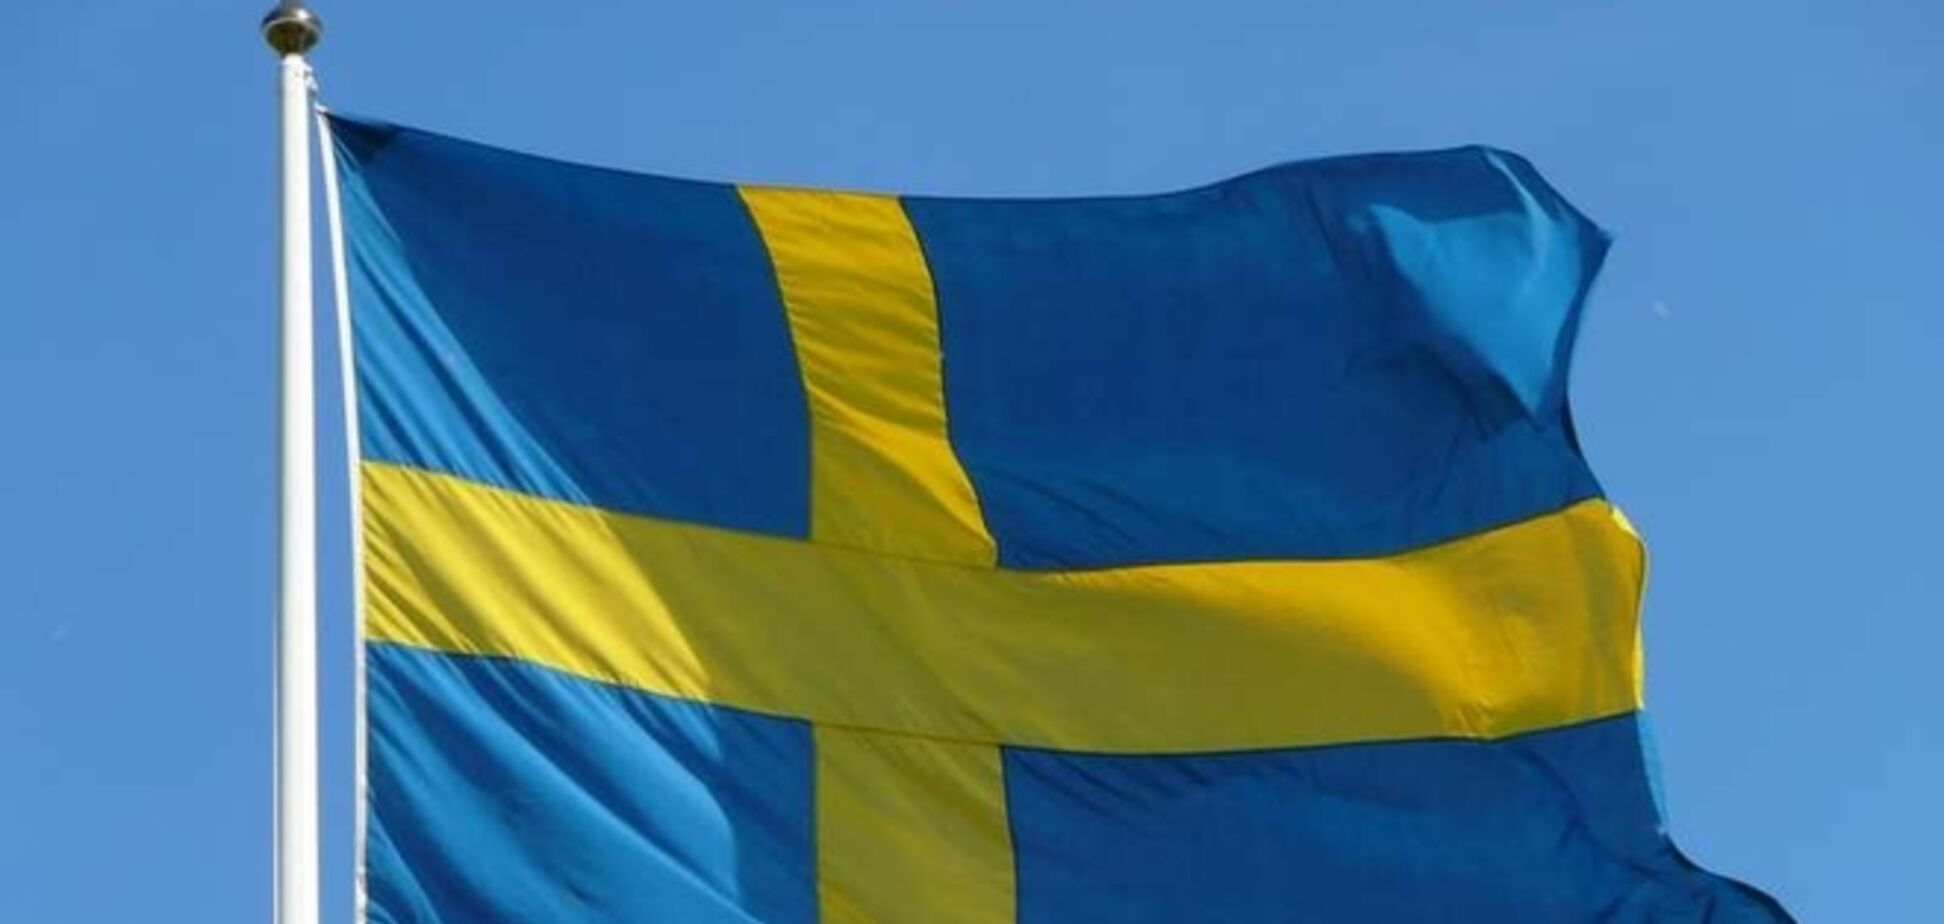 Швеция прекратила военное сотрудничество с Россией и начала повышать обороноспособность